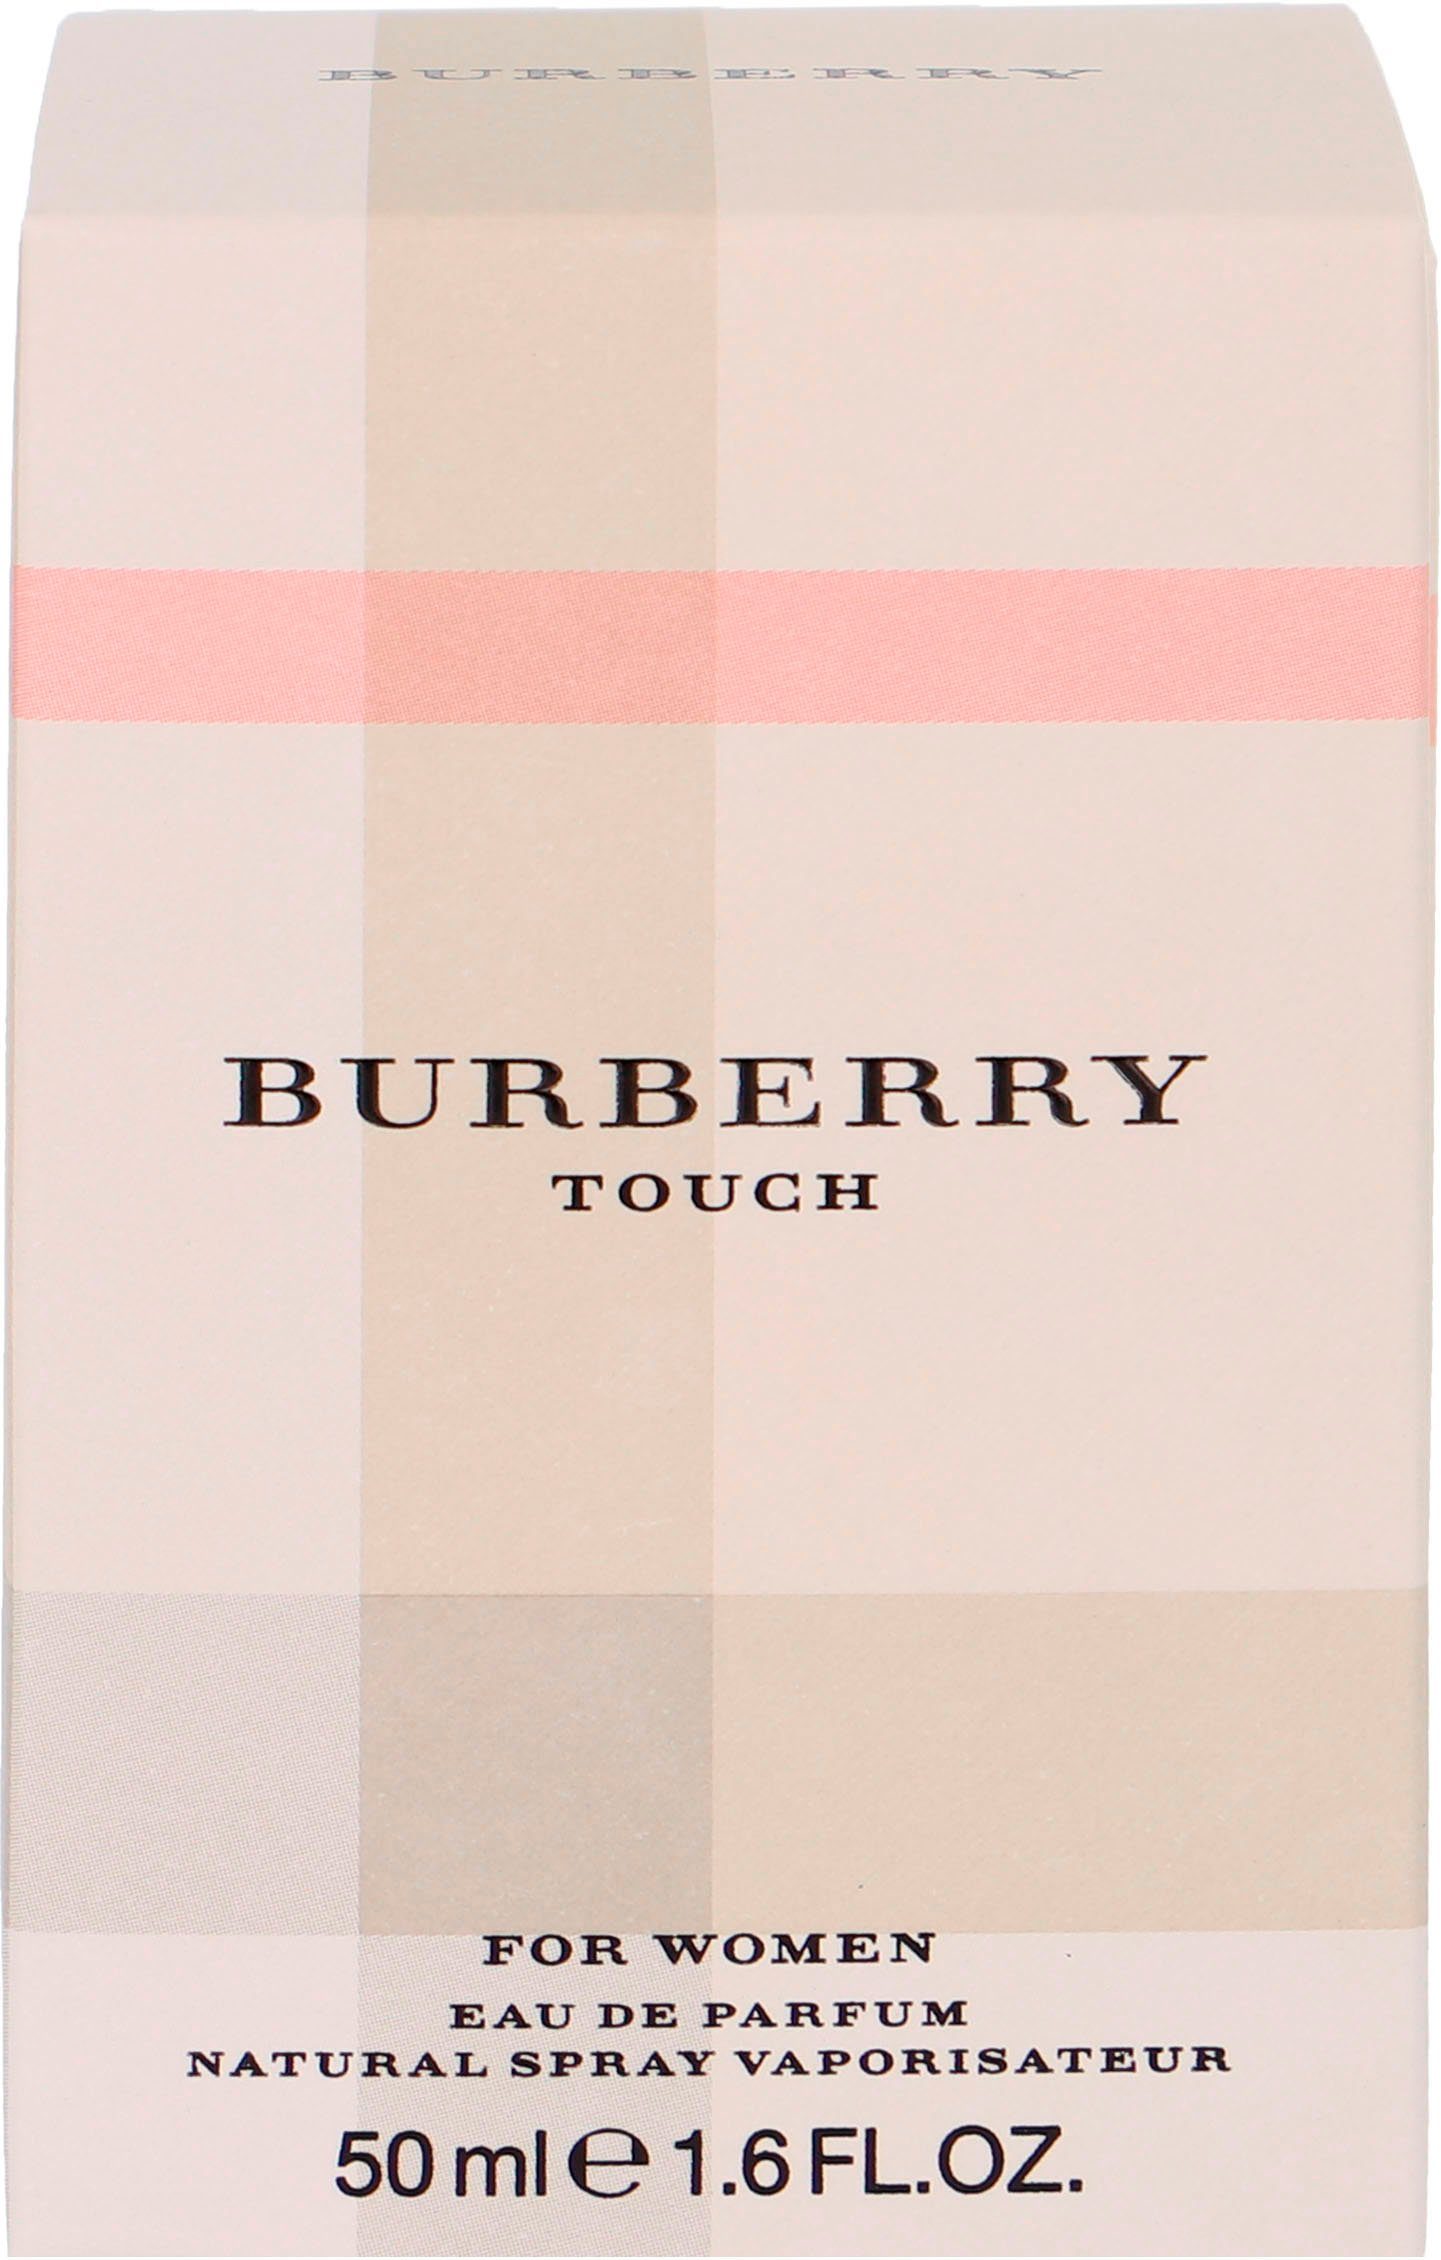 Parfum Touch BURBERRY for Women de Eau